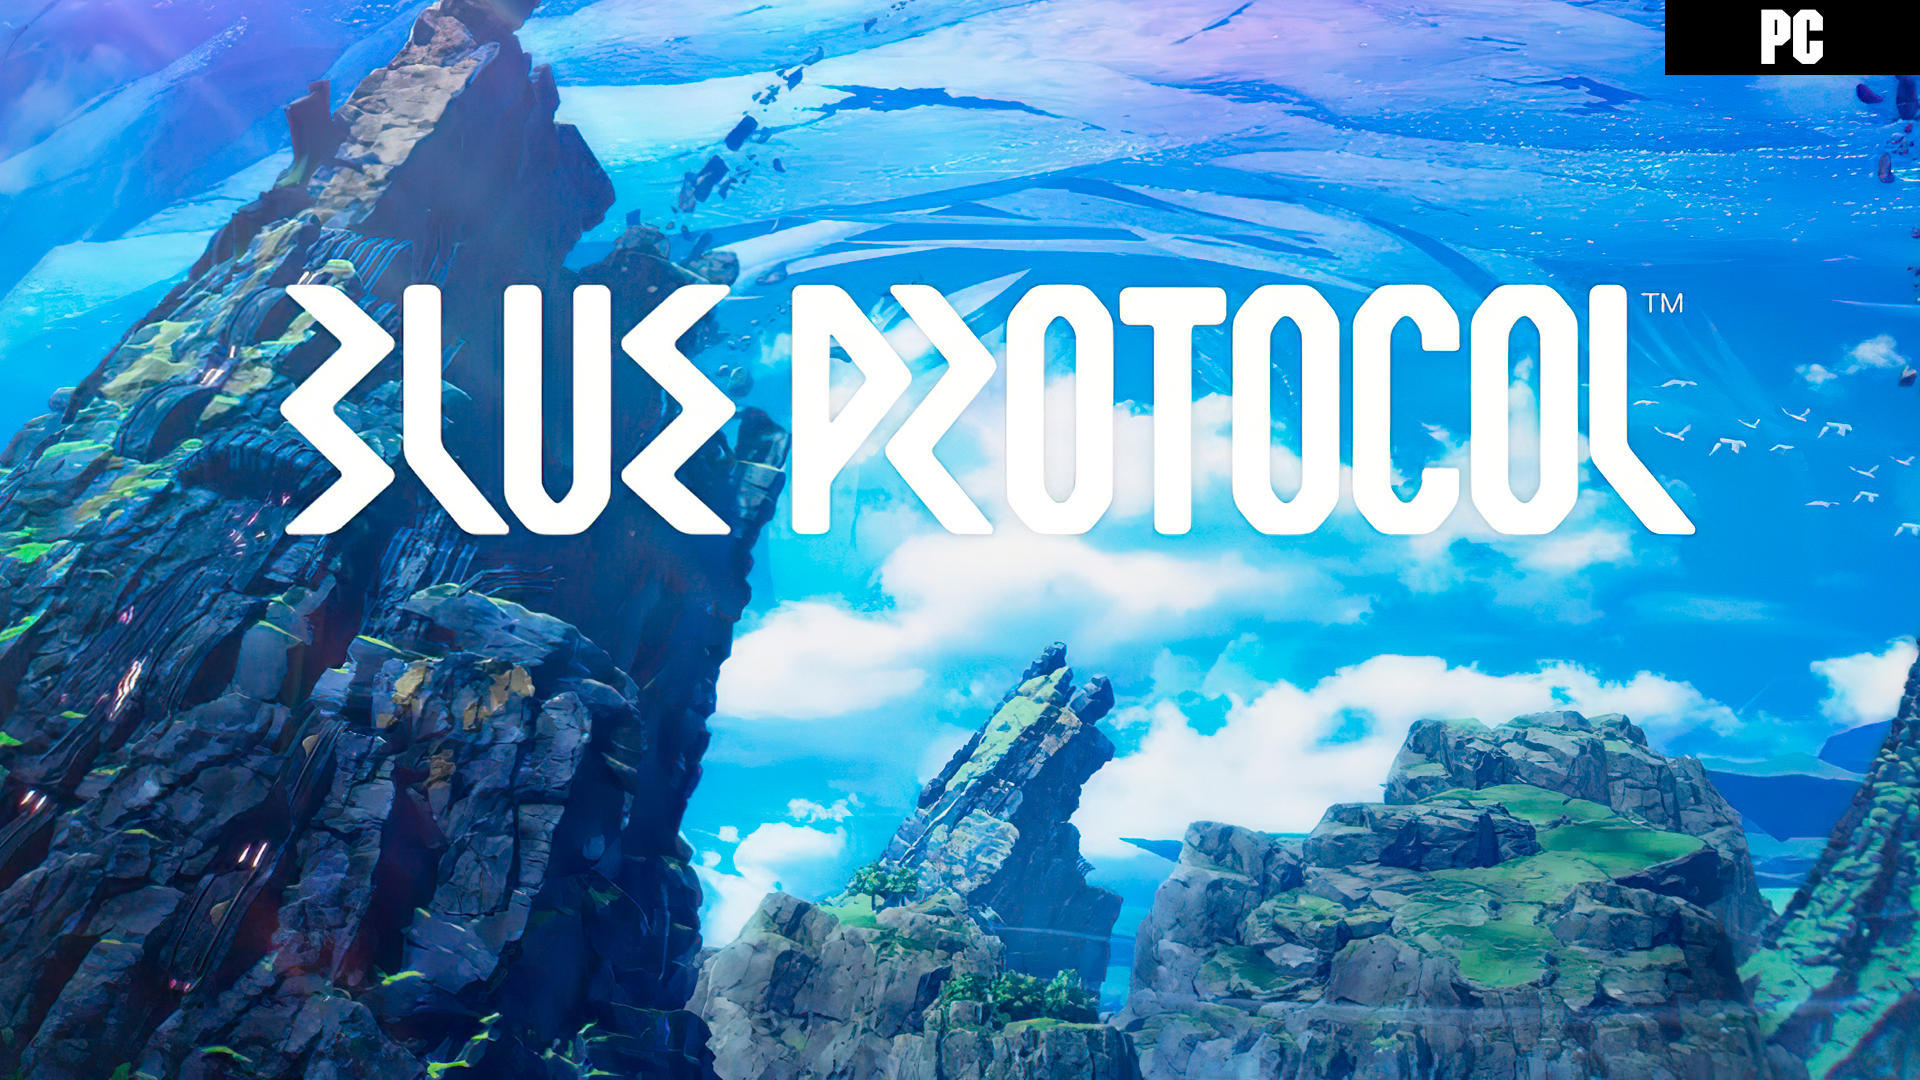 Blue Protocol  Todo lo que sabemos hasta la fecha del MMORPG